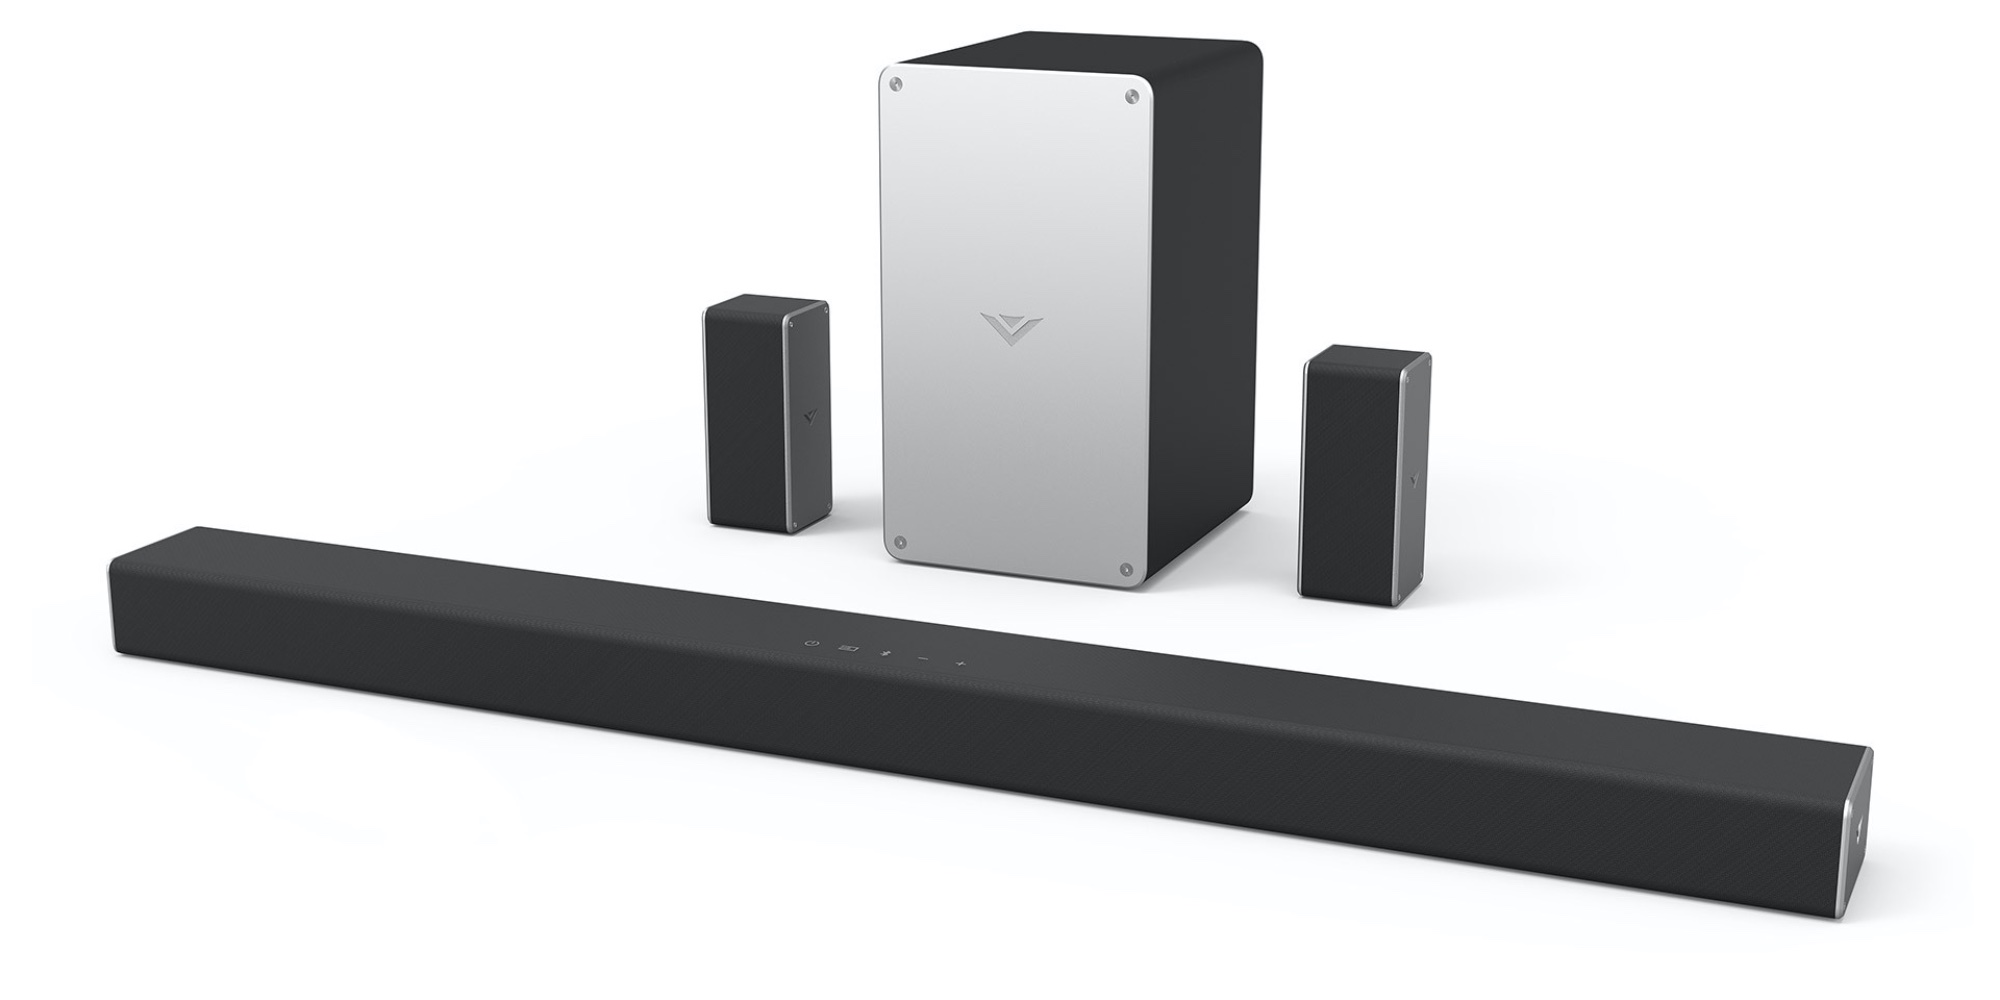 VIZIO' SmartCast 5.1Ch. Soundbar touts Chromecast support at 200